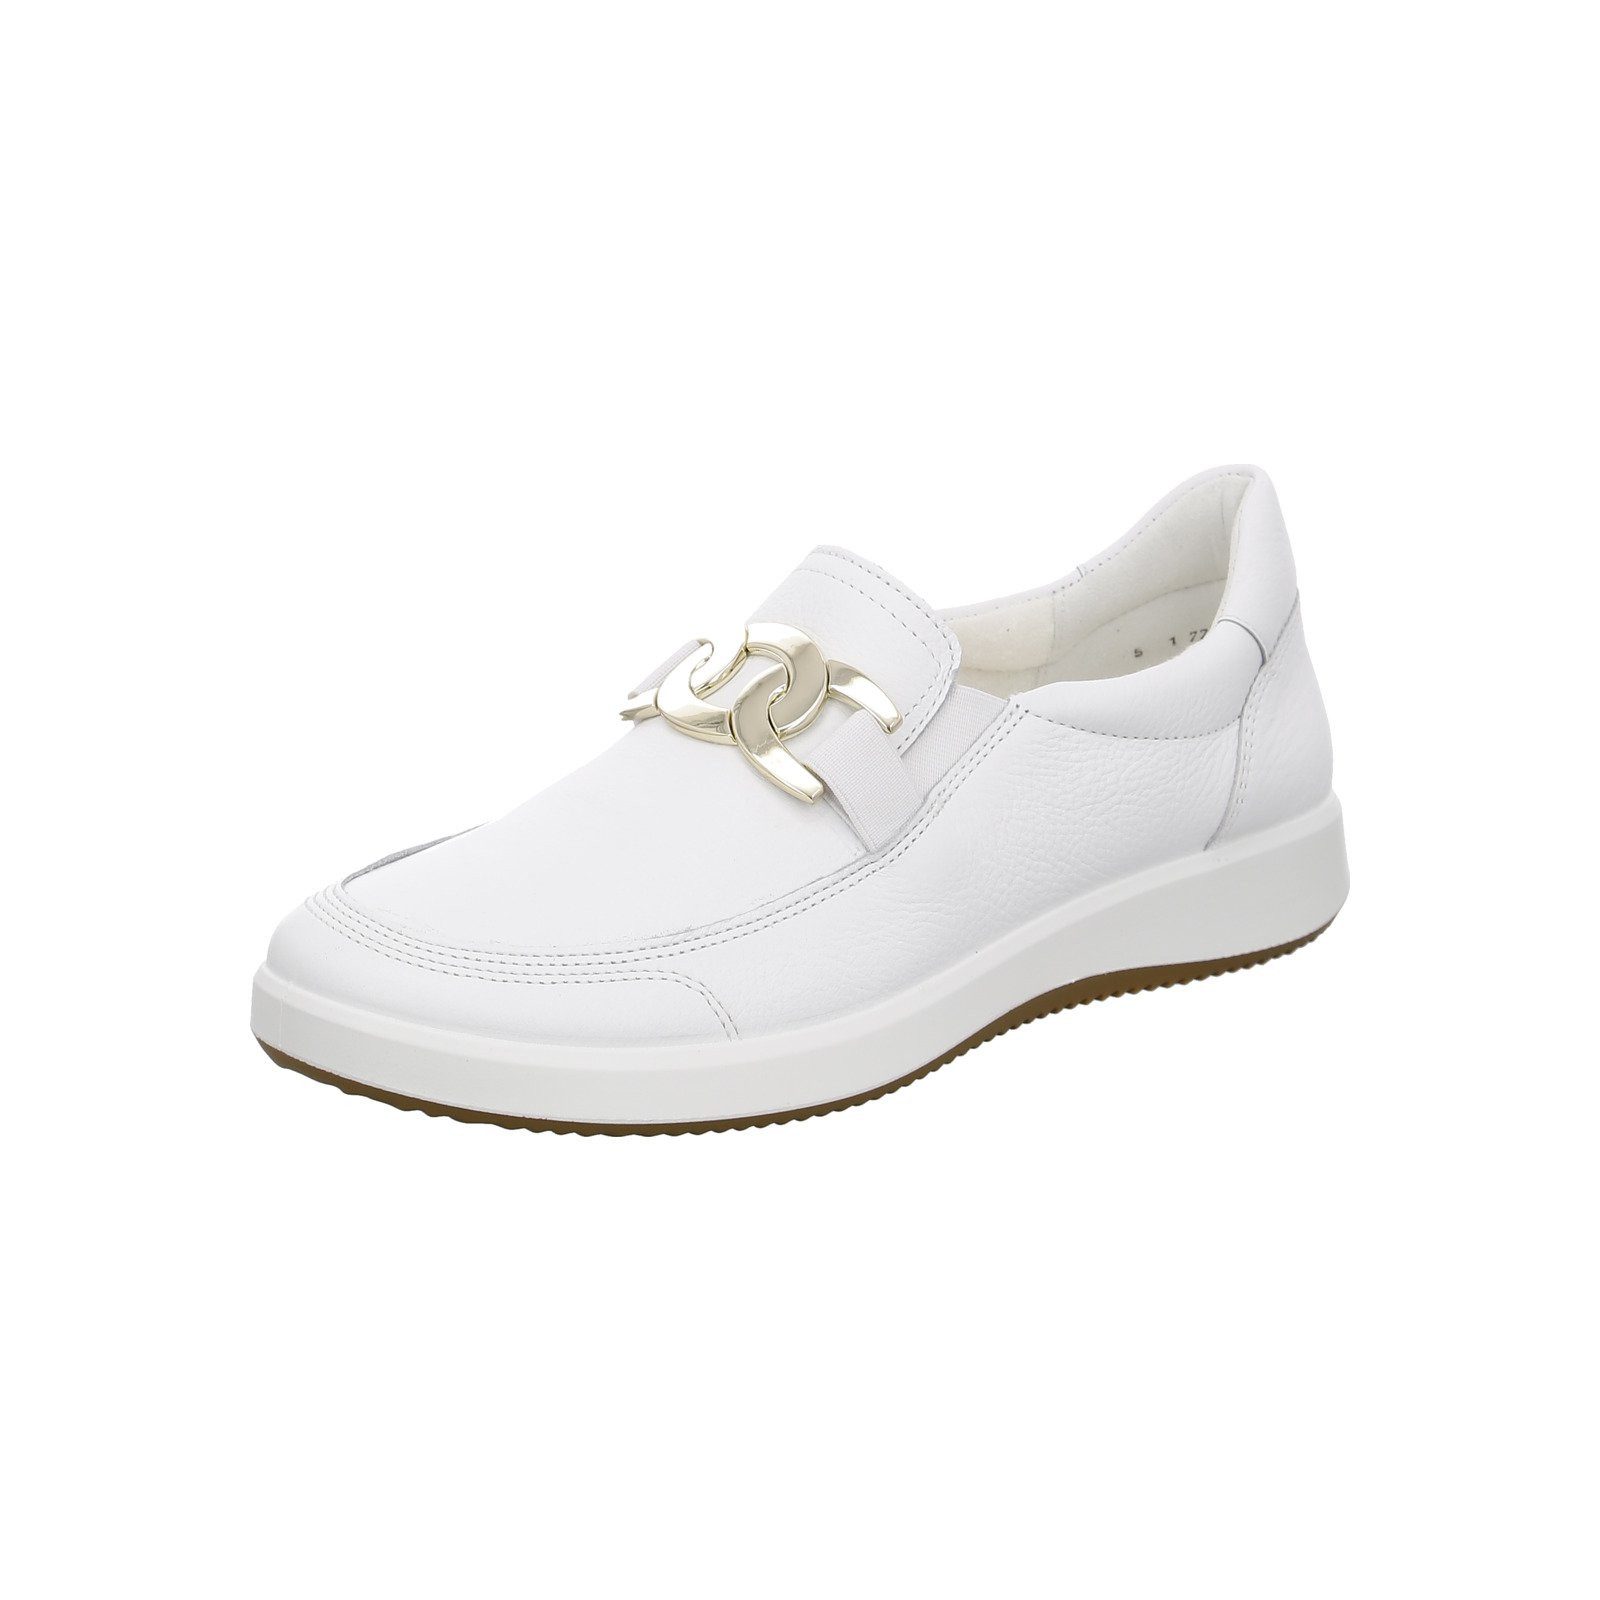 Ara Roma - Damen Schuhe Slipper weiß